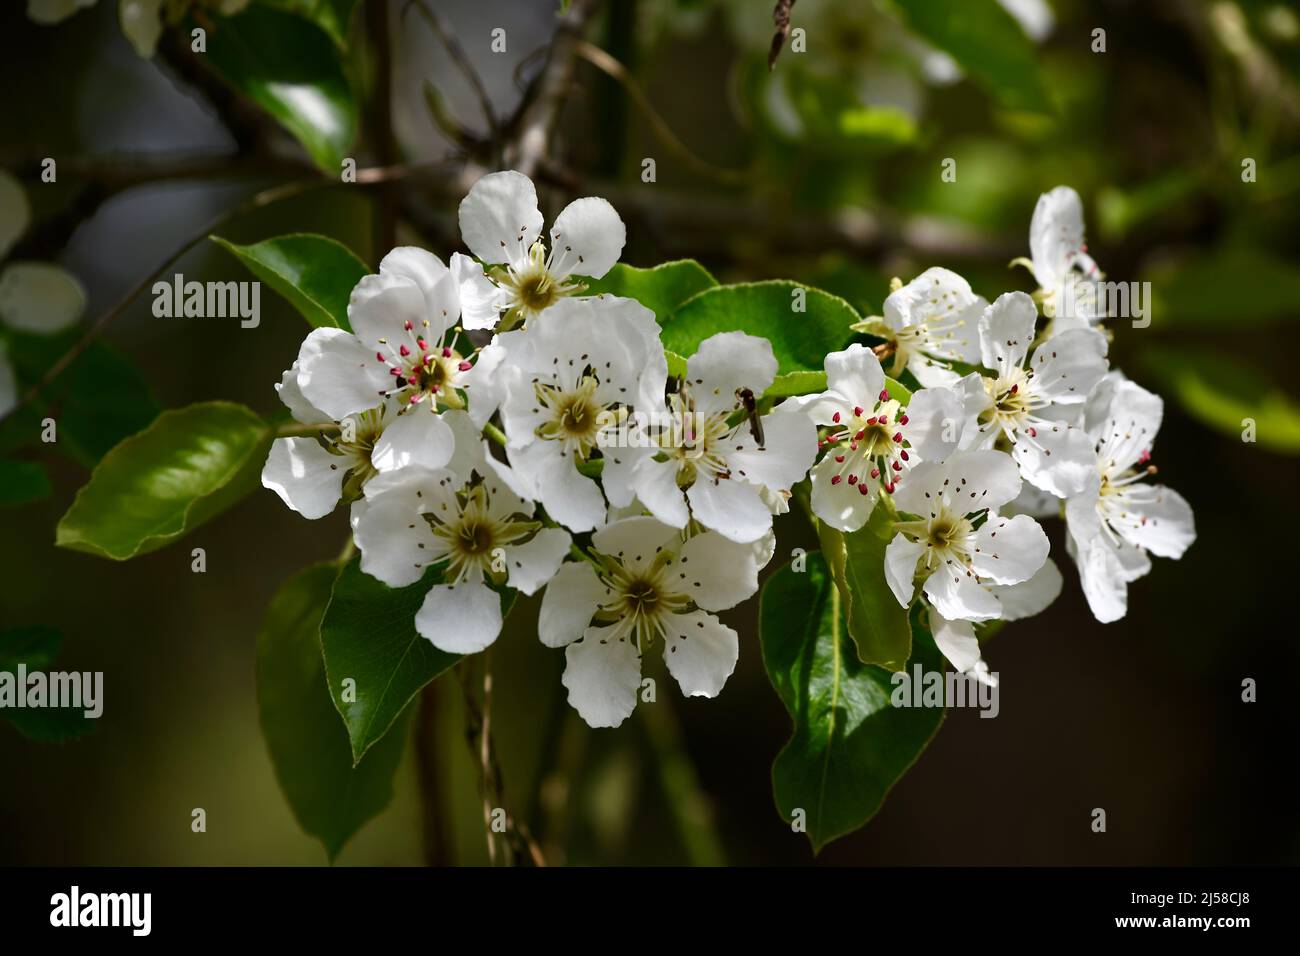 wunderschöne weisse Apfelblüten am Zweig Stock Photo